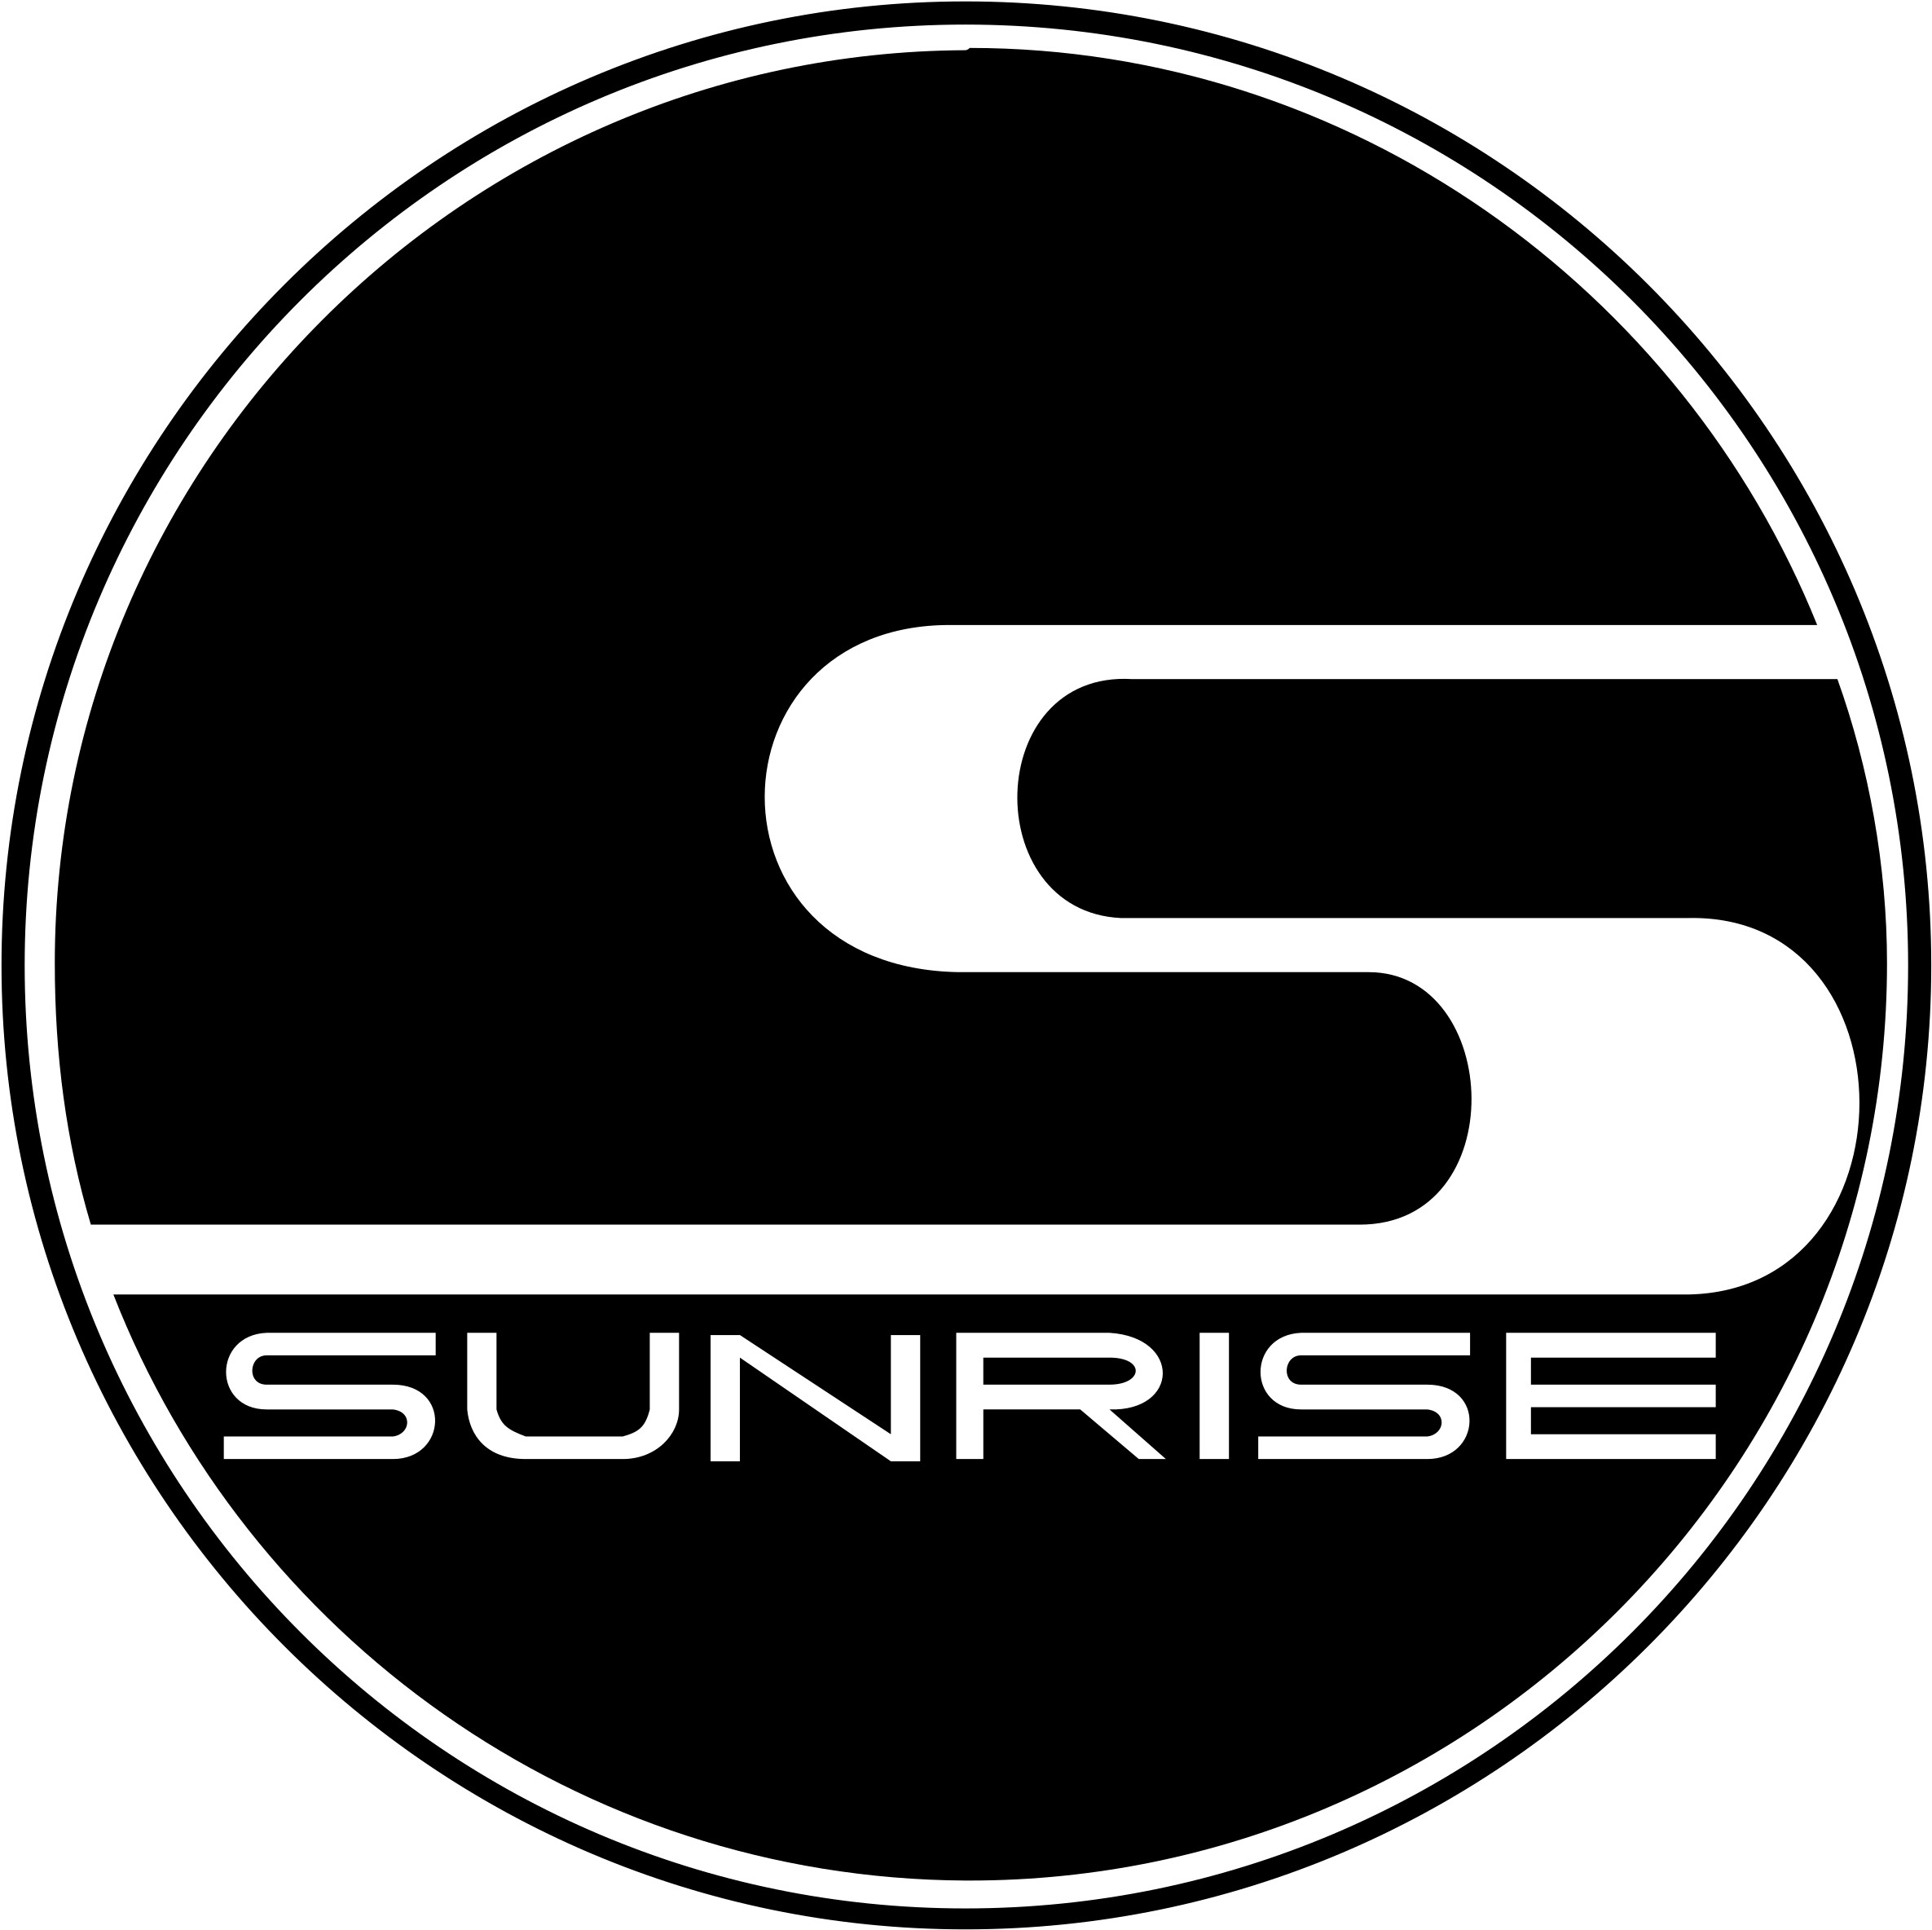 Sunrise Logo Black And White - Sunrise Logo (2400x2400)